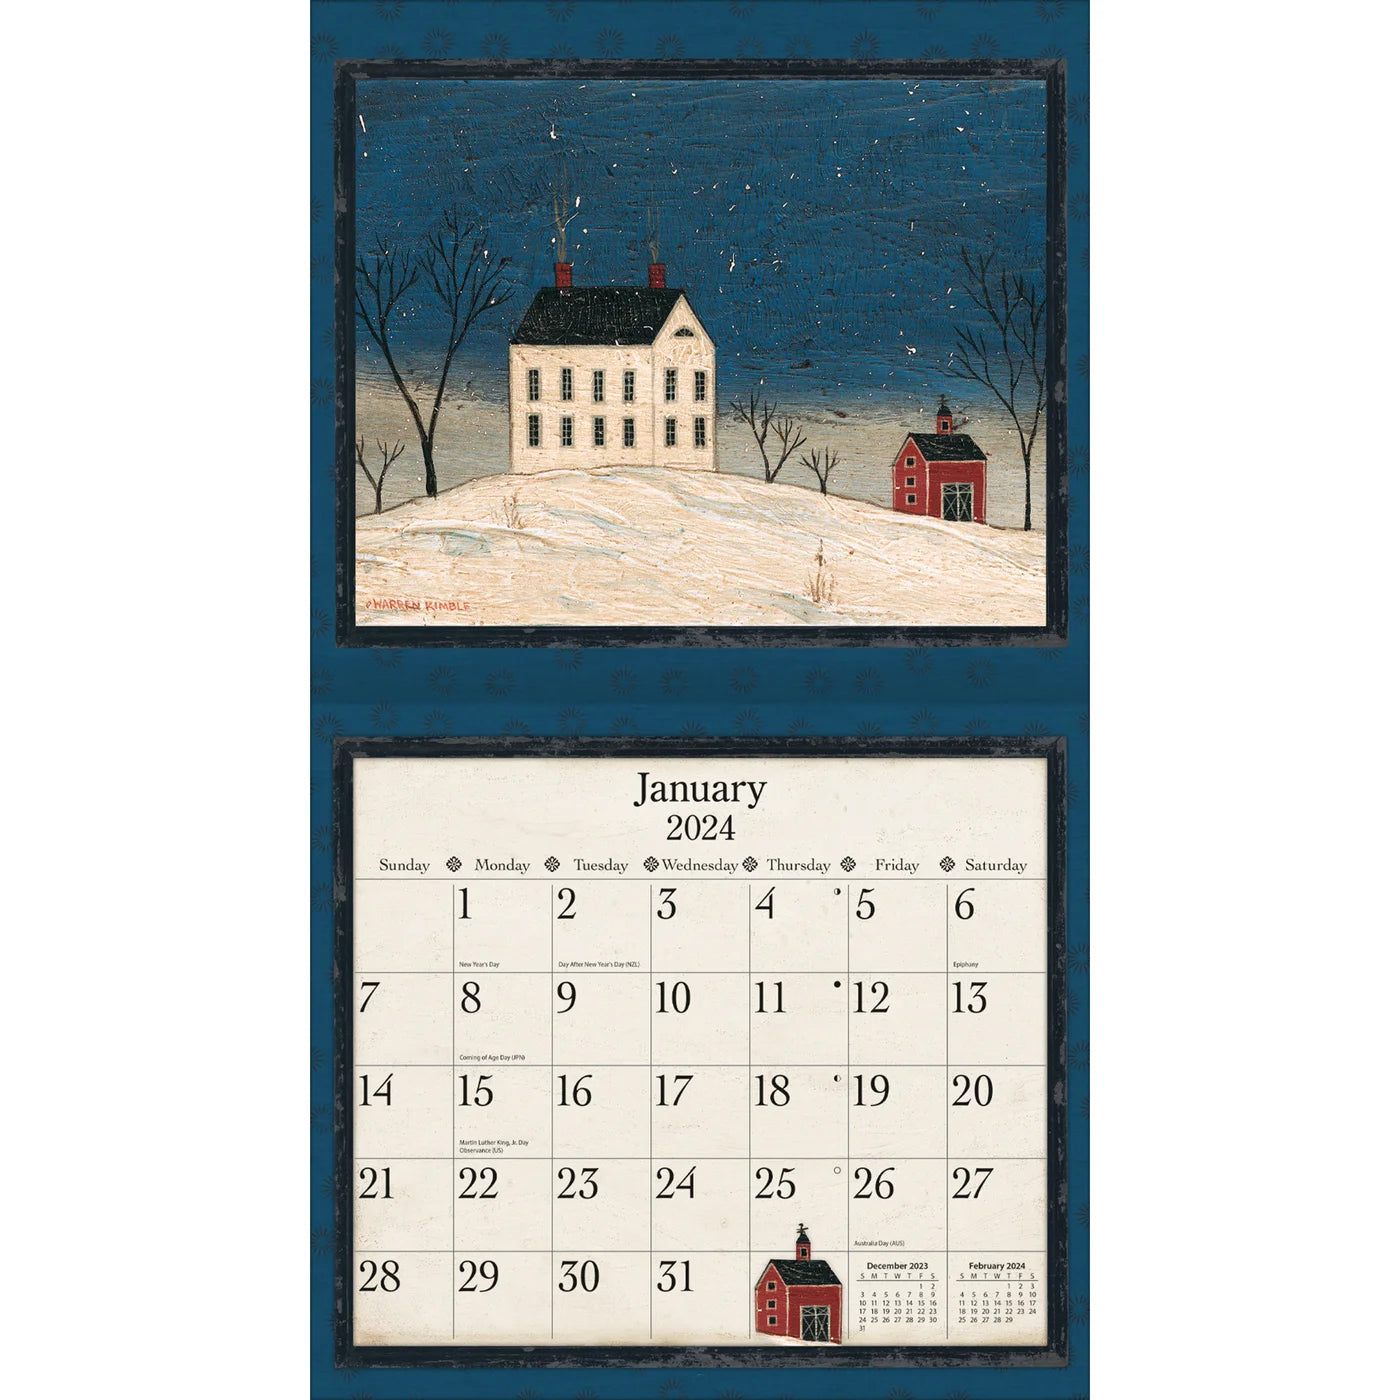 2024-lang-warren-kimble-deluxe-wall-calendar-art-calendars-by-lang